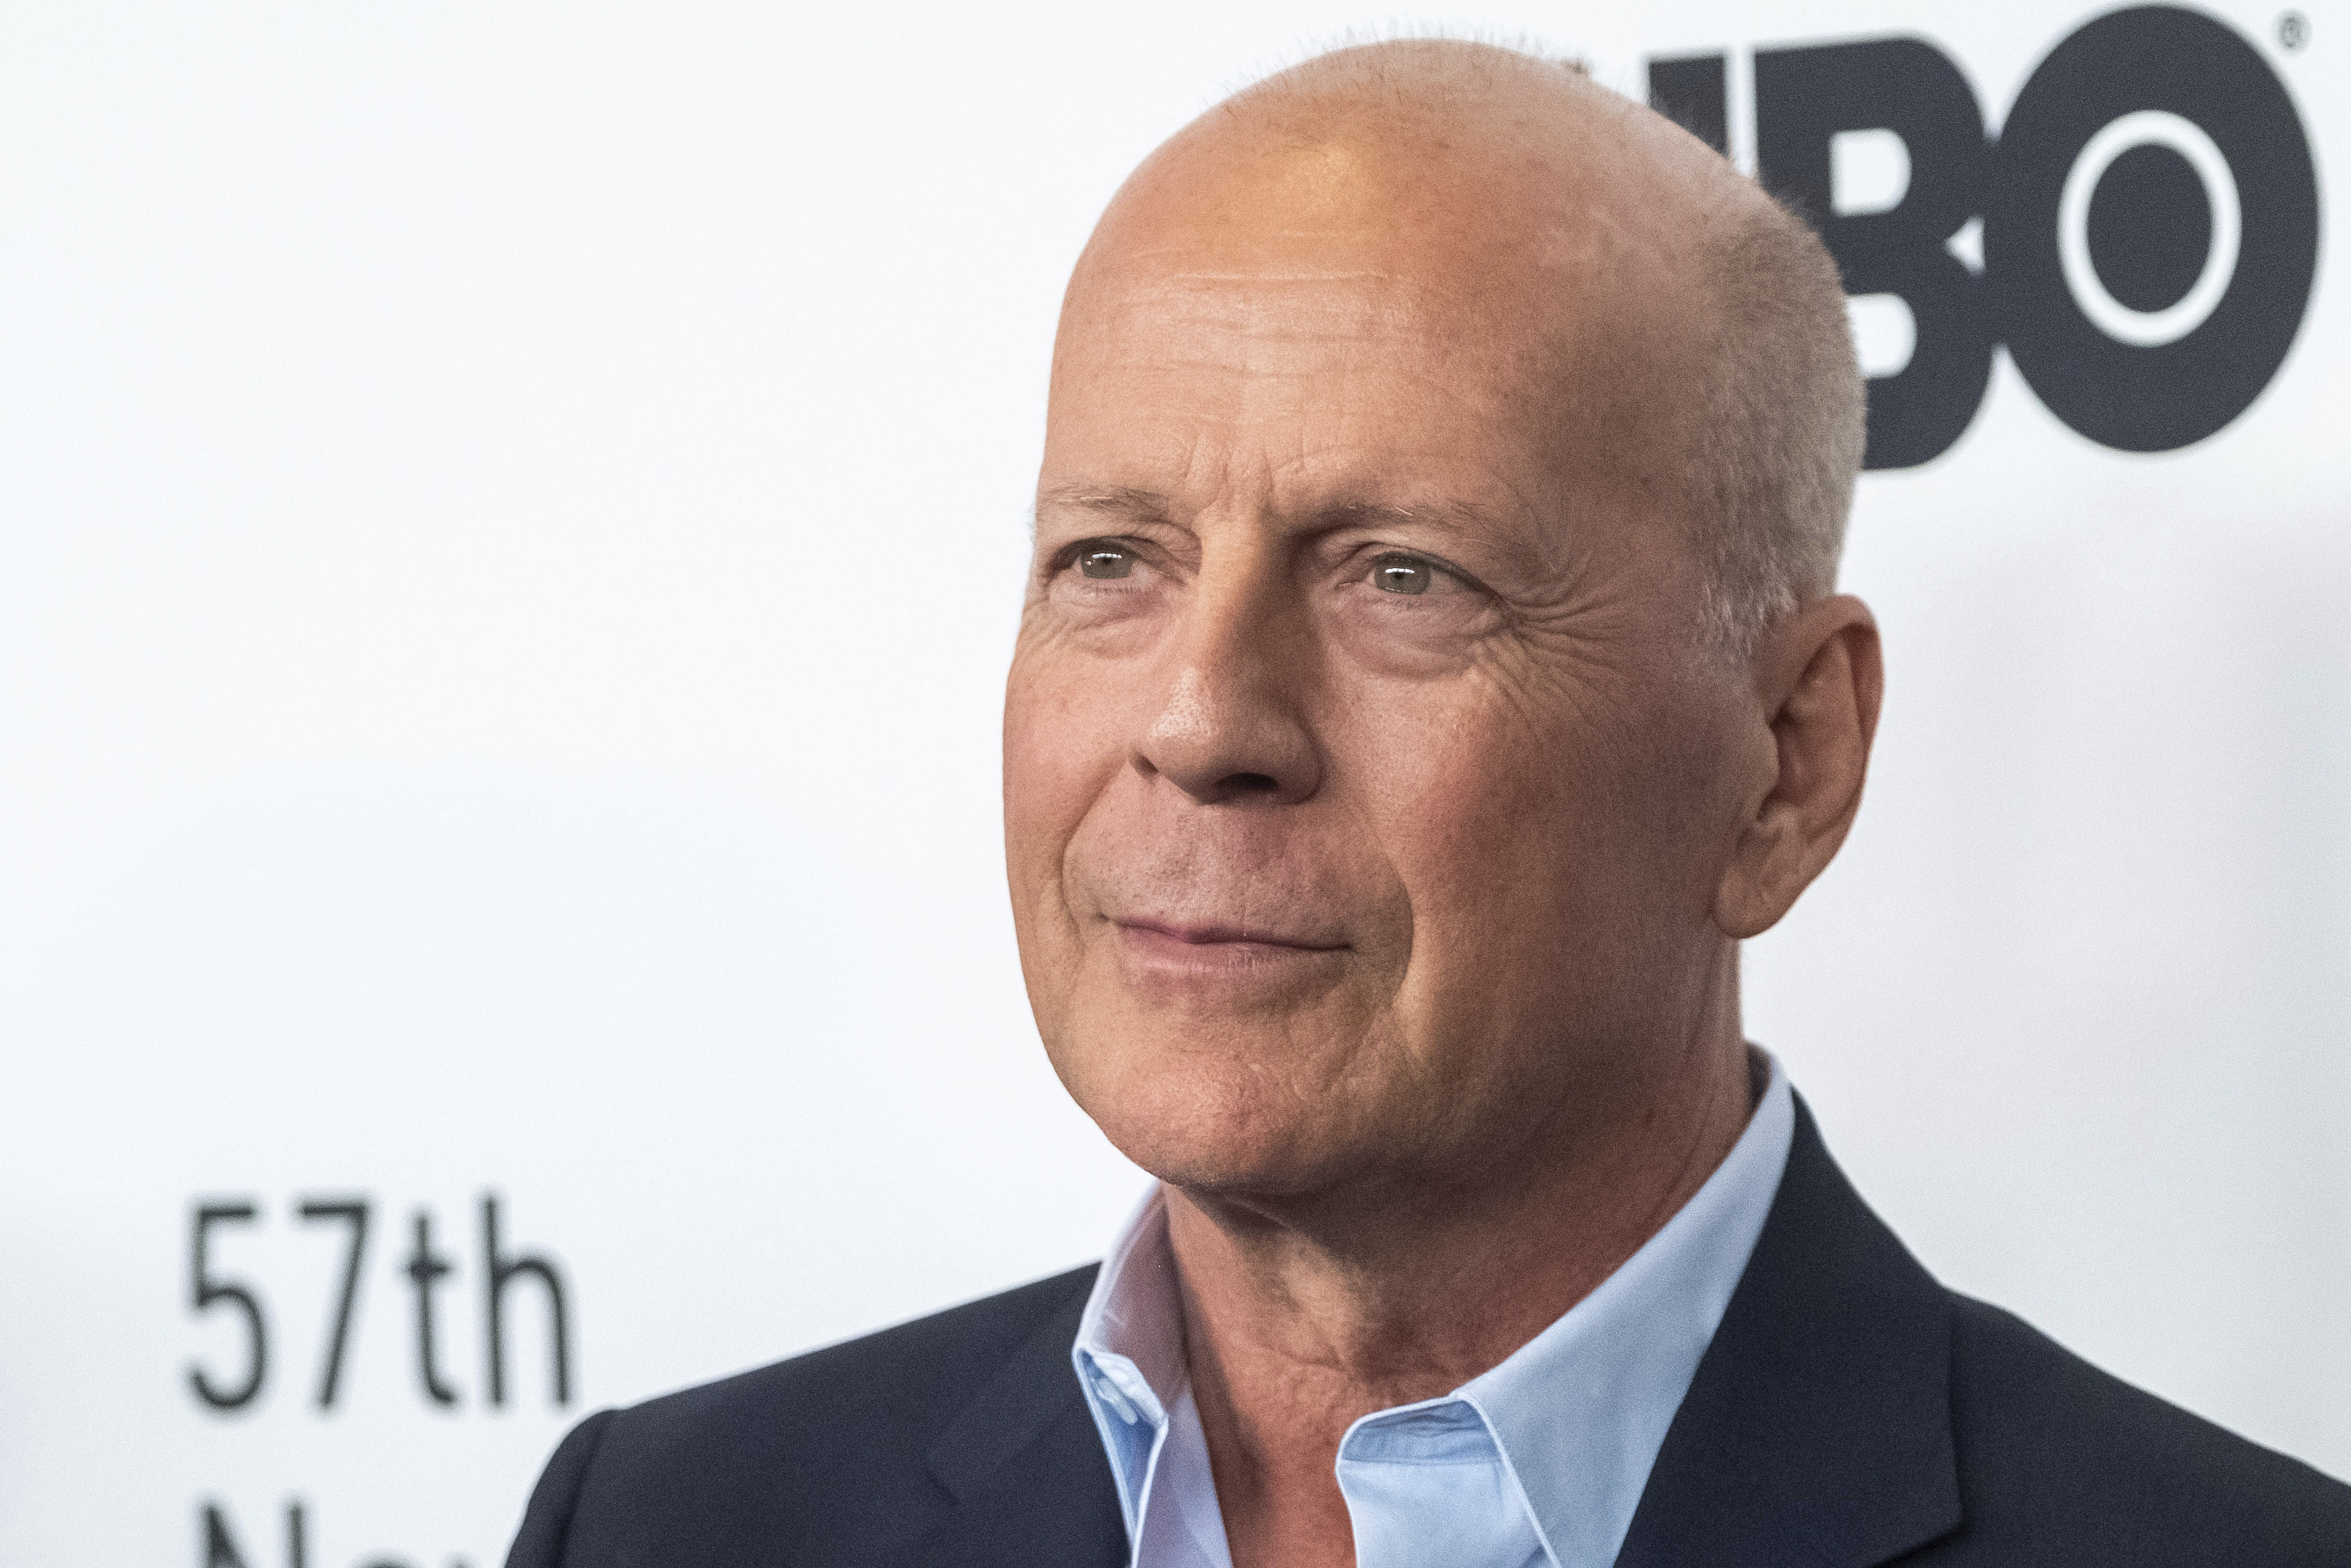 La familia de Bruce Willis dio detalles de cómo vive tras el diagnóstico de demencia frontotemporal